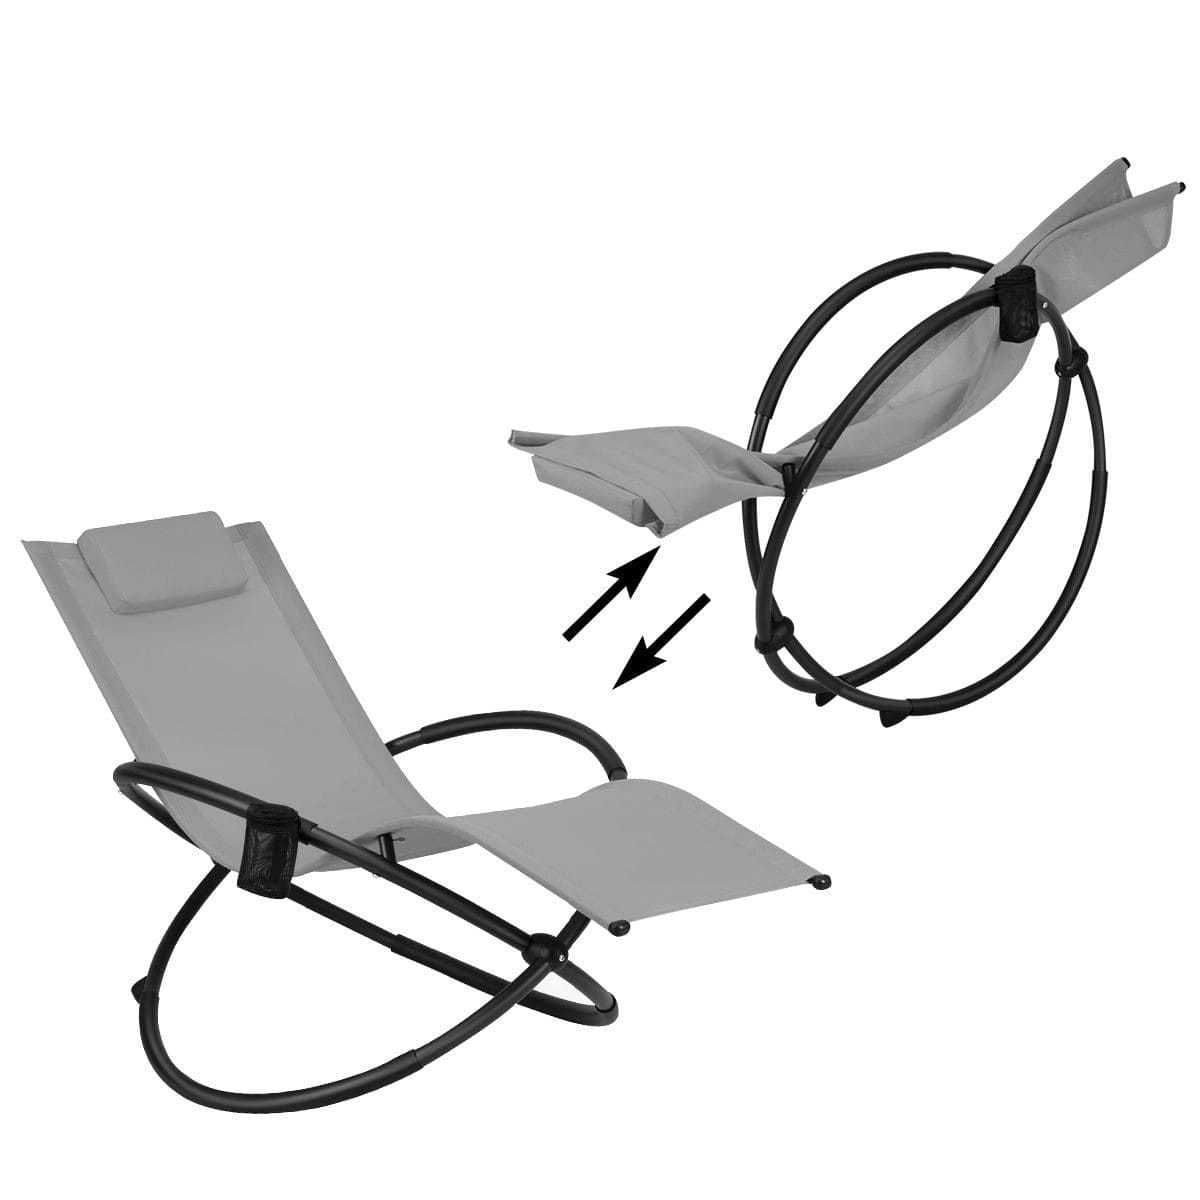 Składane krzesło bujane orbitalne 74 x144 x 84,5 cm